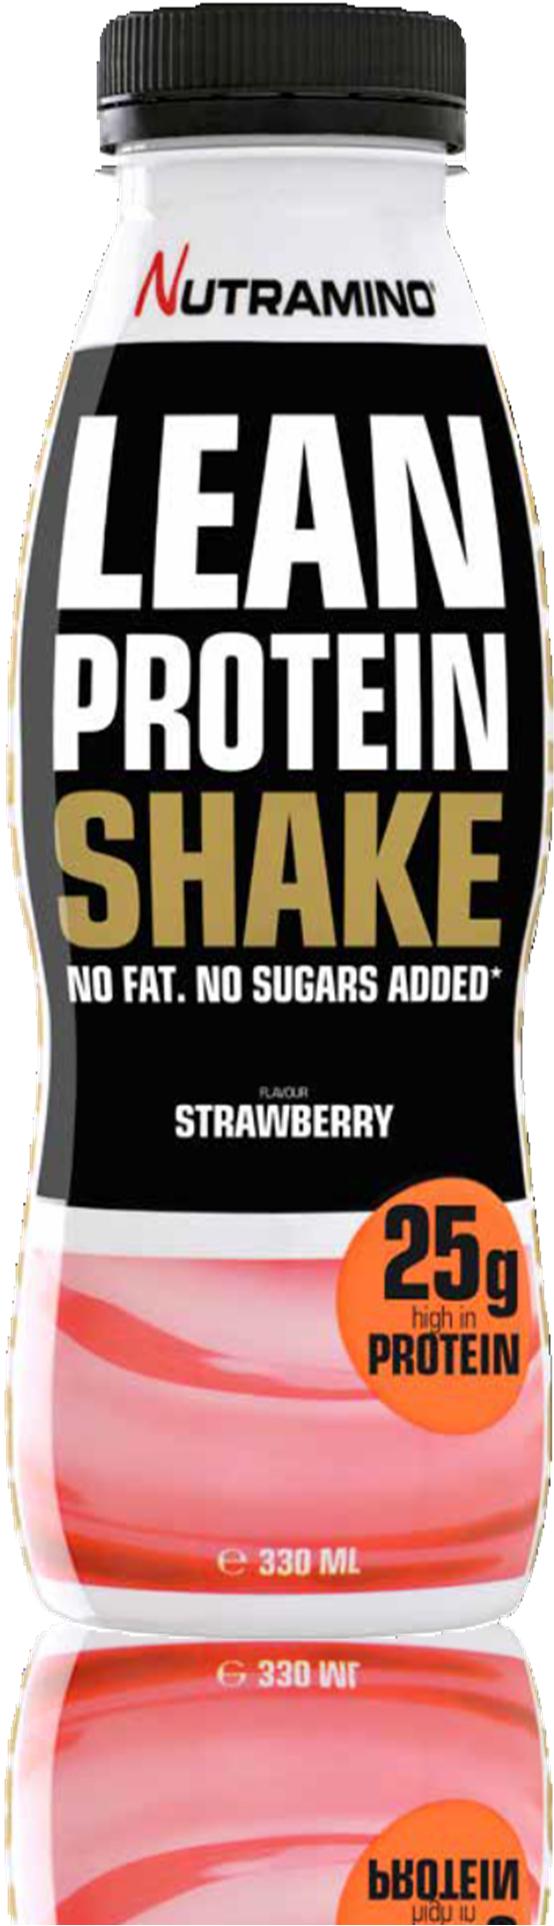 LEAN PROTEIN SHAKE STRAWBERRY 330 ml Nutramino Lean Protein Shake on maailman herkullisin dieettishake. Se sisältää 25 g proteiinia, joka auttaa tukemaan lihasten palautumista.